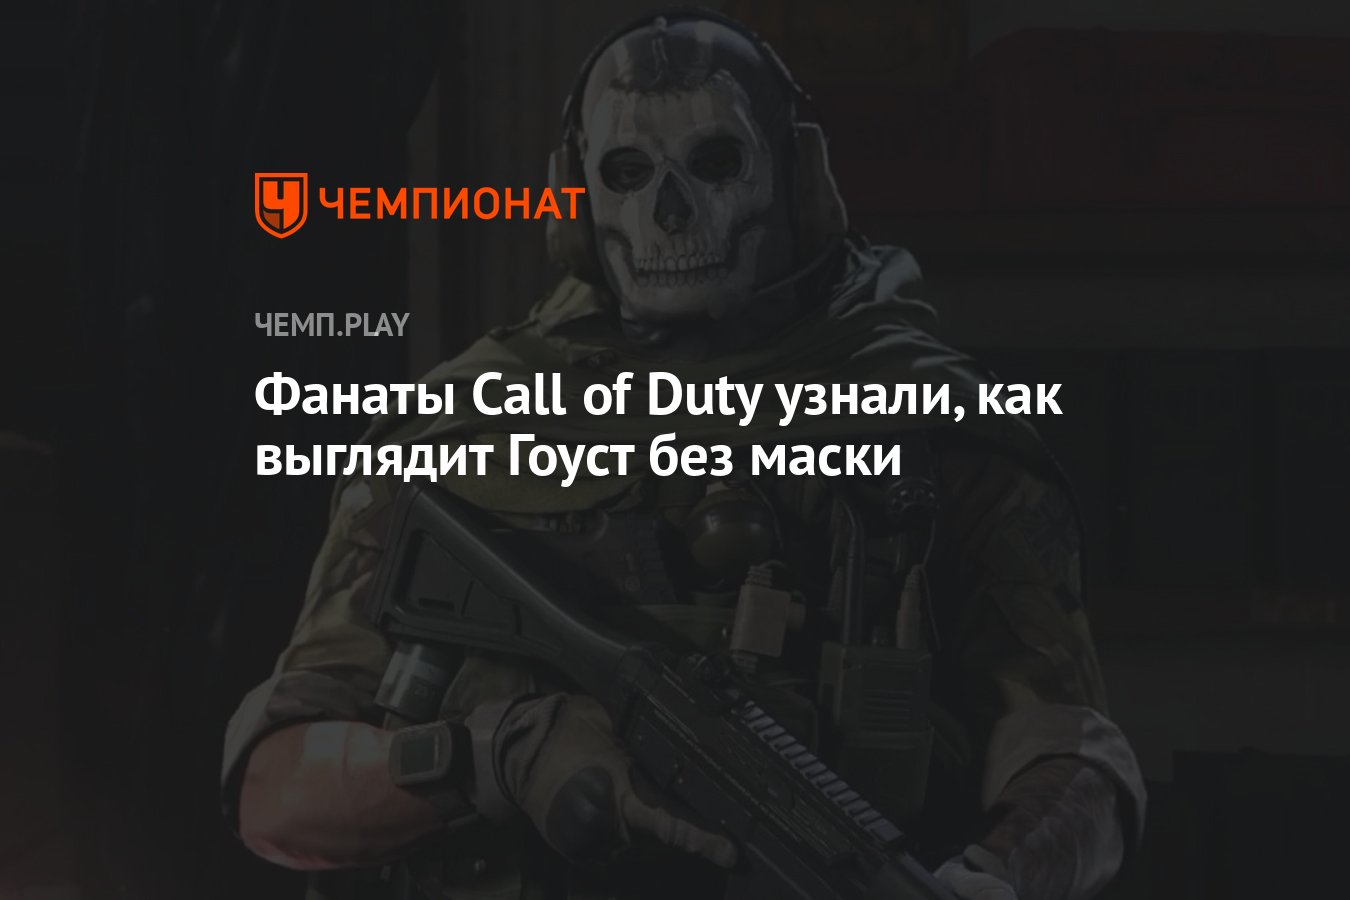 Маски - Call of Duty ghost — купить недорого, цены, товаров, #